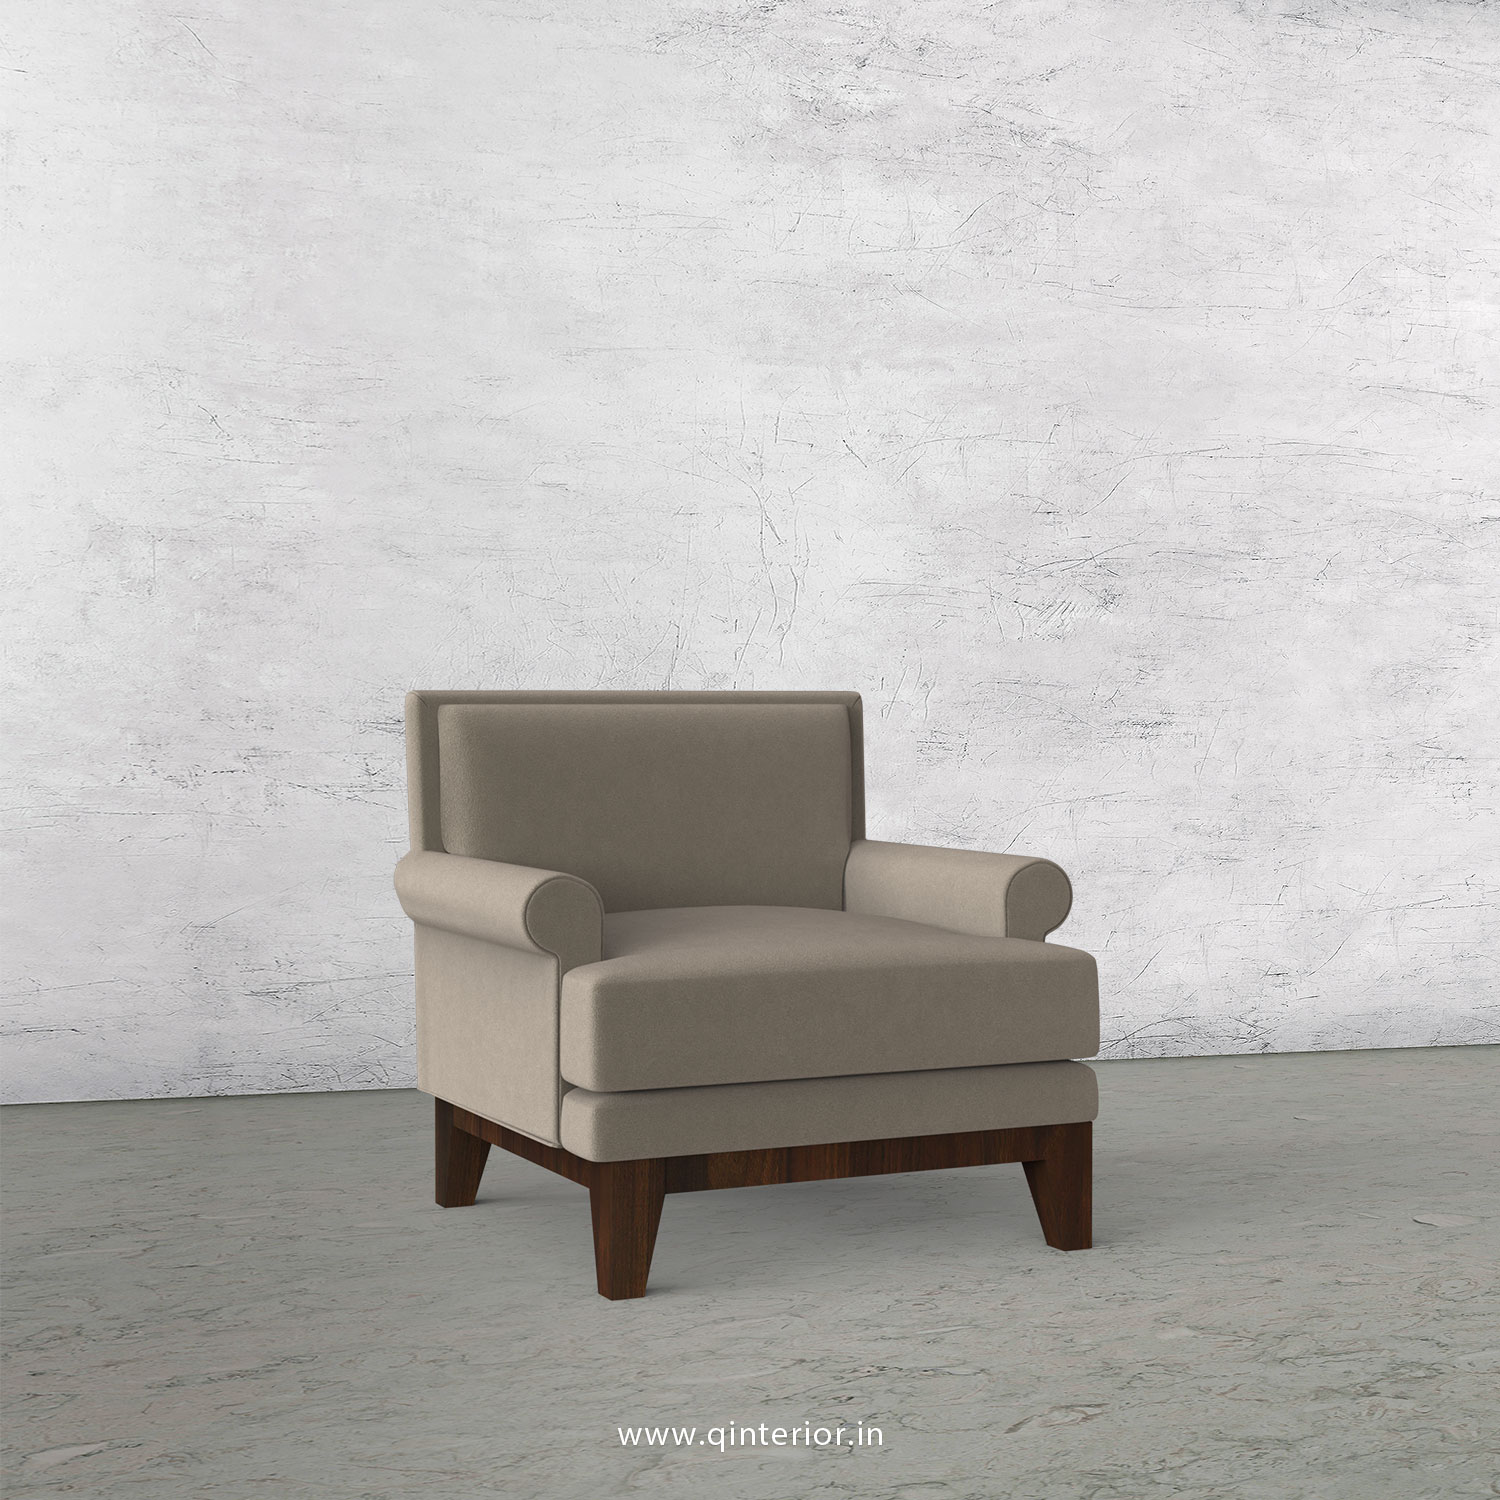 Aviana 1 Seater Sofa in Velvet Fabric - SFA001 VL12